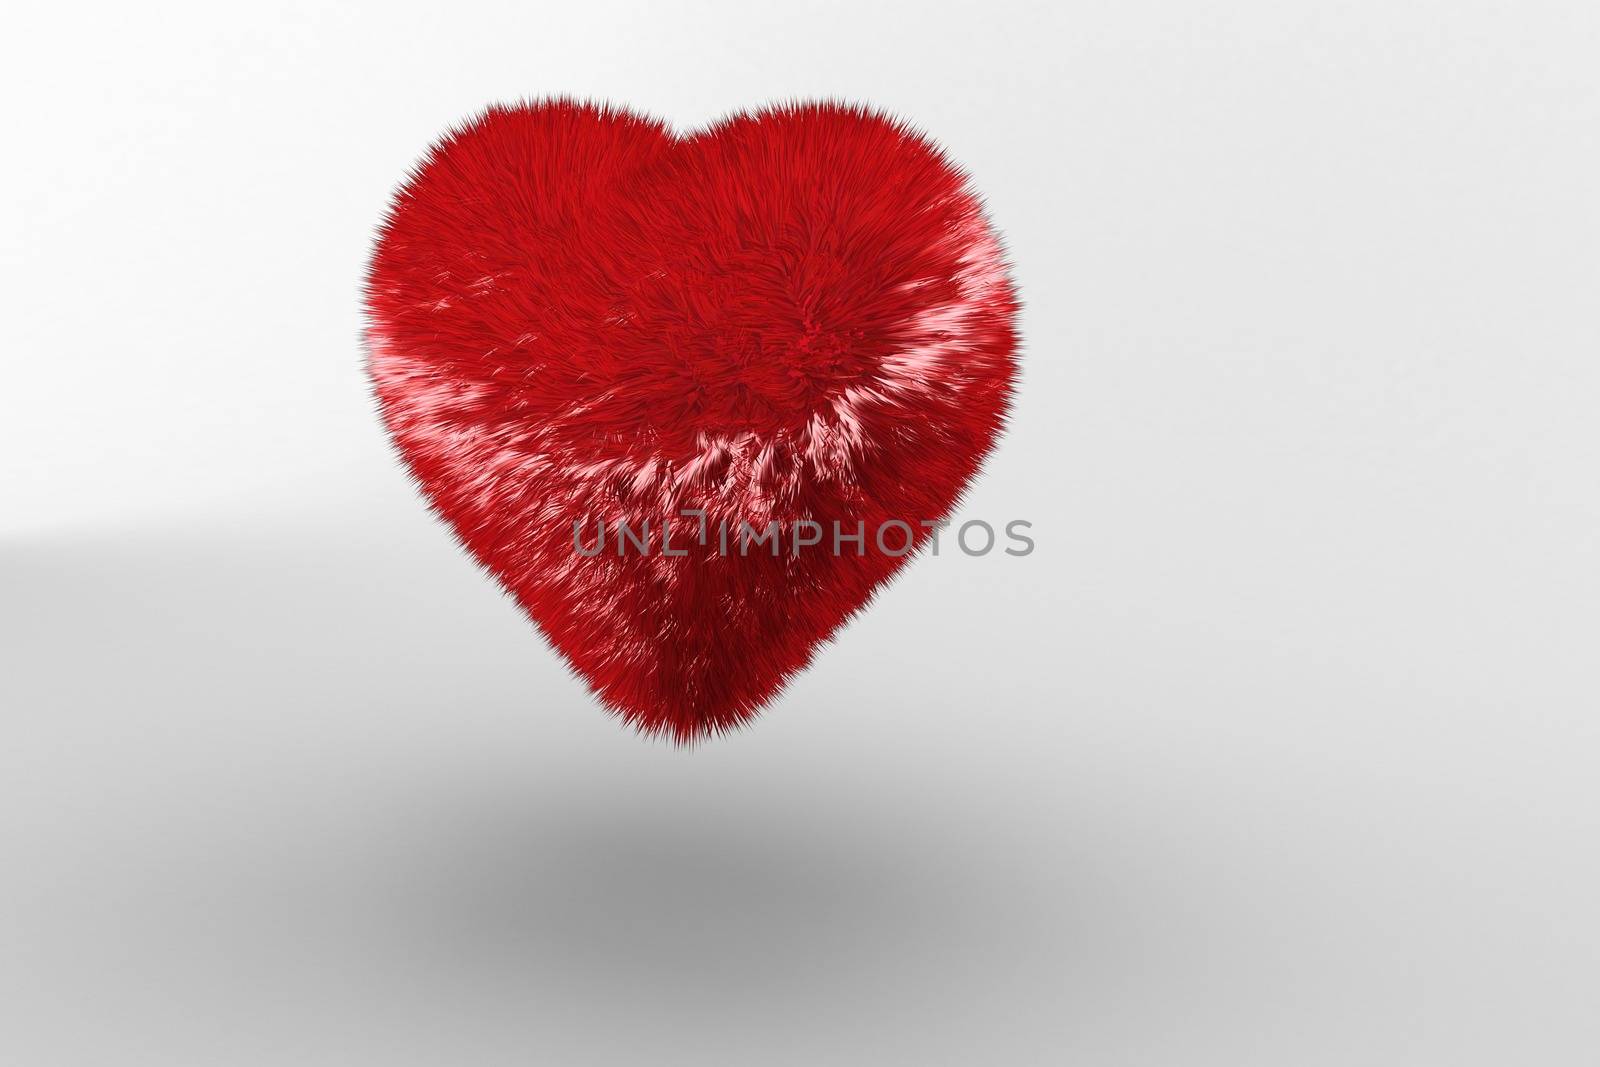 Red heart by Wavebreakmedia